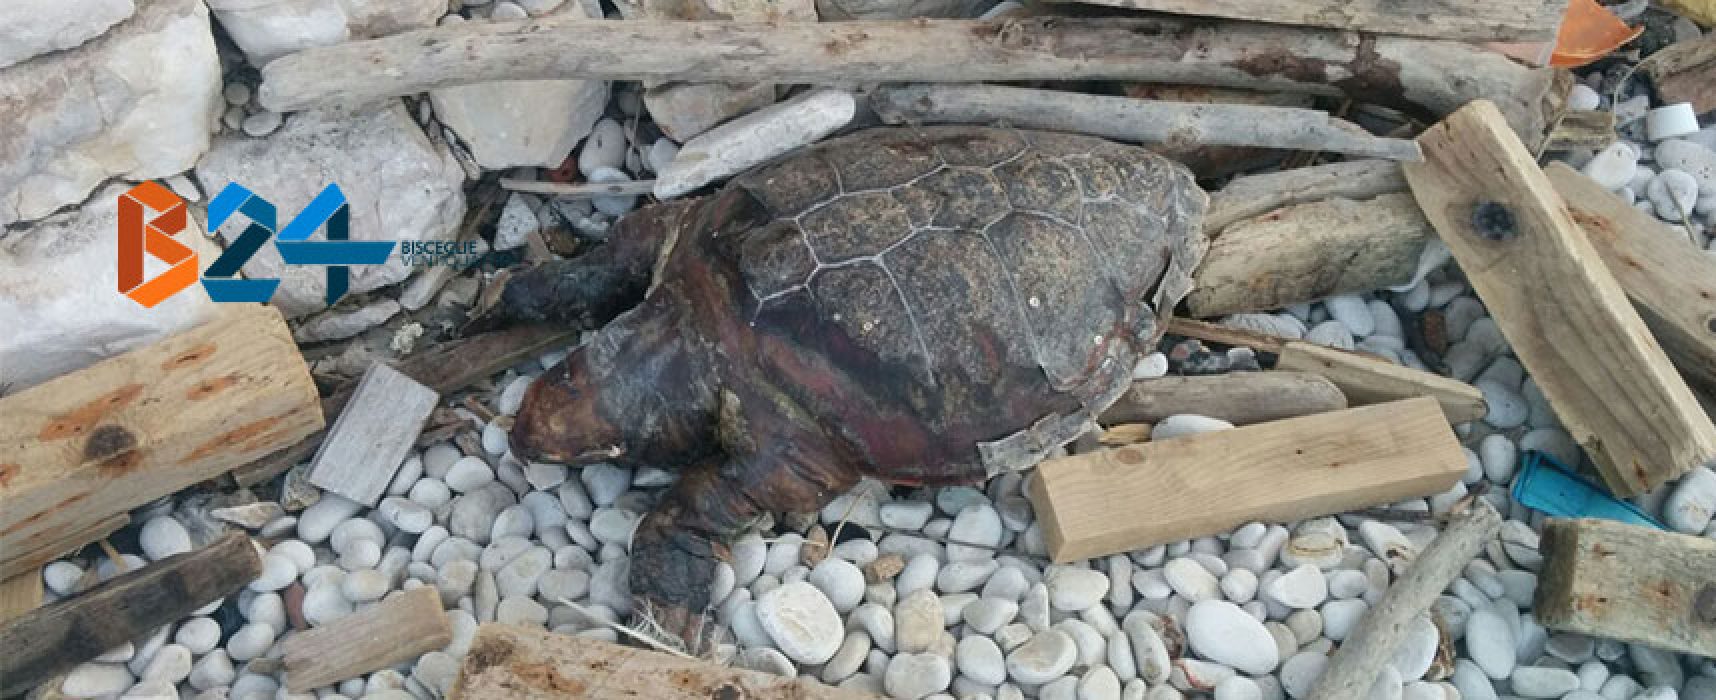 Carcassa di tartaruga ritrovata in zona Salsello